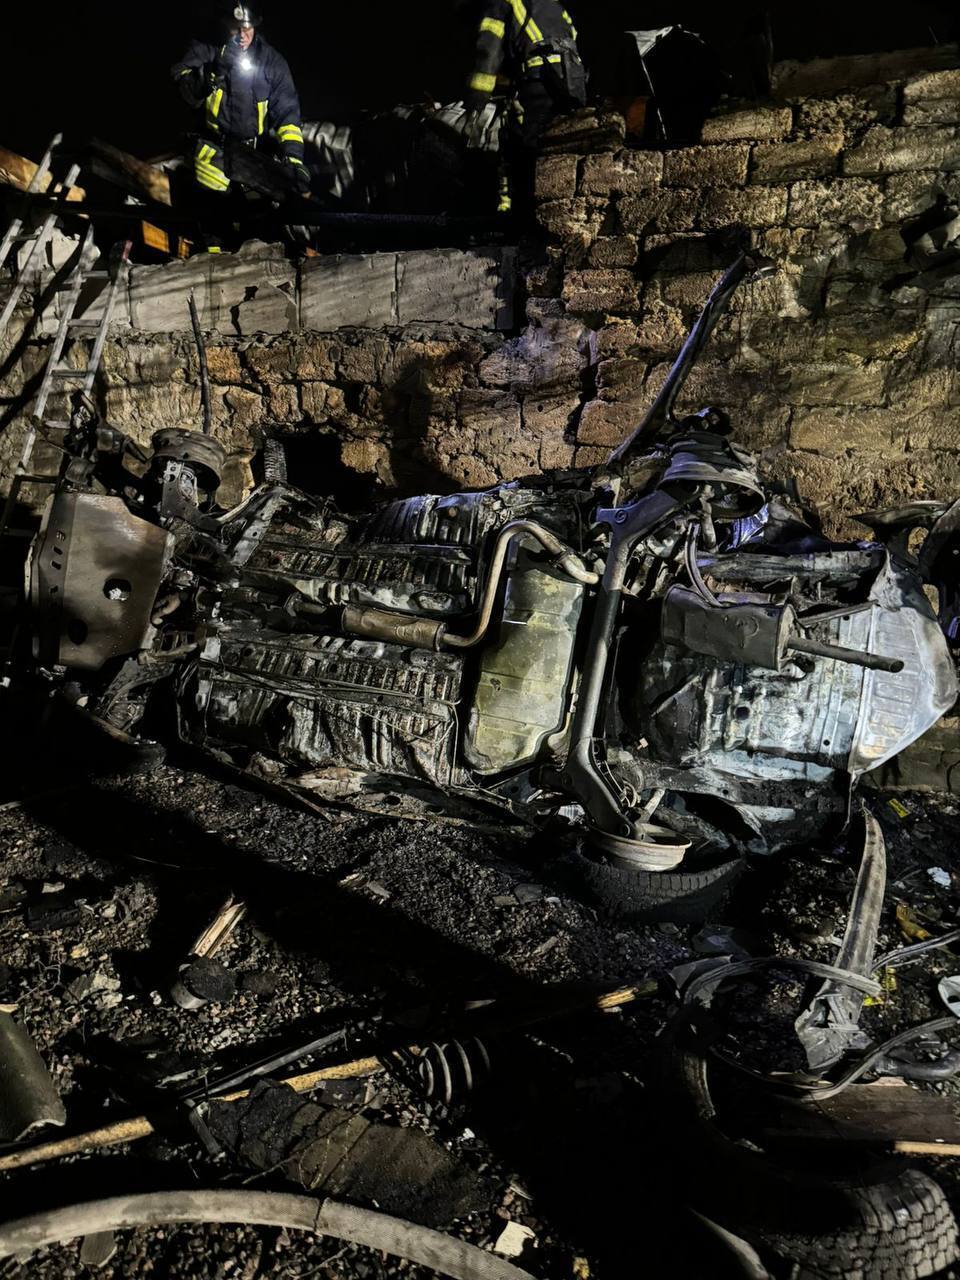 Війська РФ вдарили БПЛА по Одещині: виникли пожежі, понад 10 постраждалих. Фото та відео